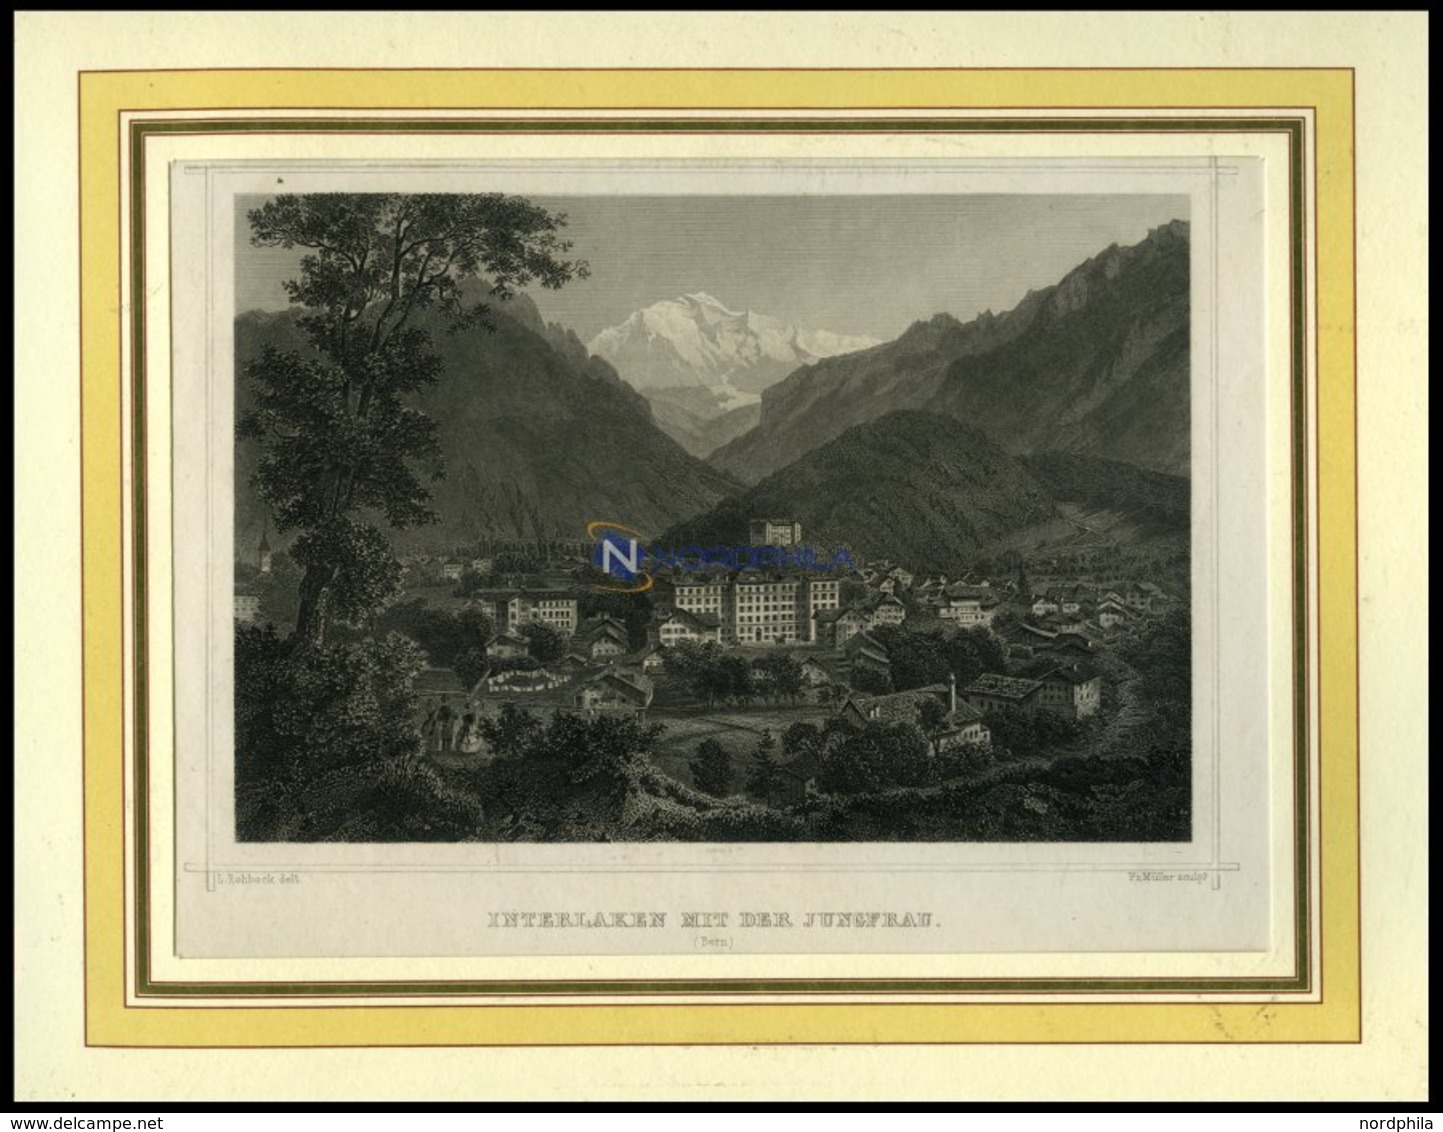 INTERLAKEN, Gesamtansicht Mit Der Jungfrau, Stahlstich Von Rohbock/Müller Um 1840 - Lithografieën